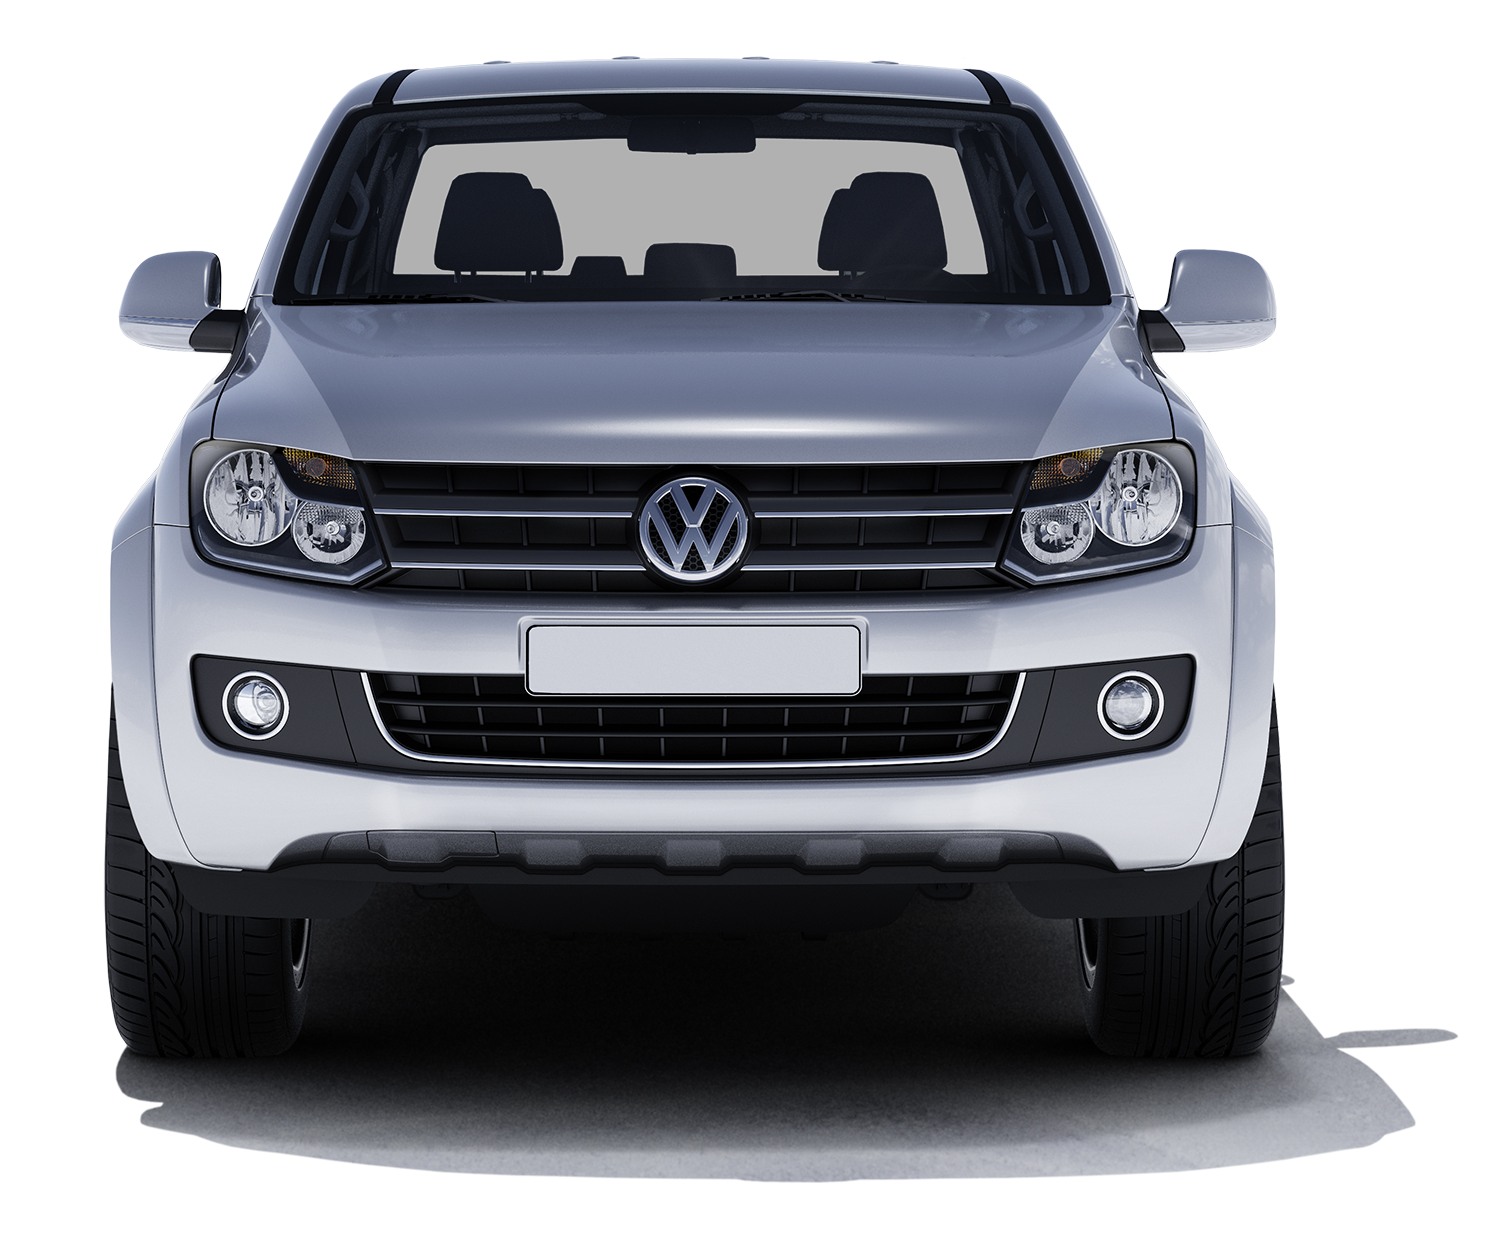 Volkswagen PNG Image